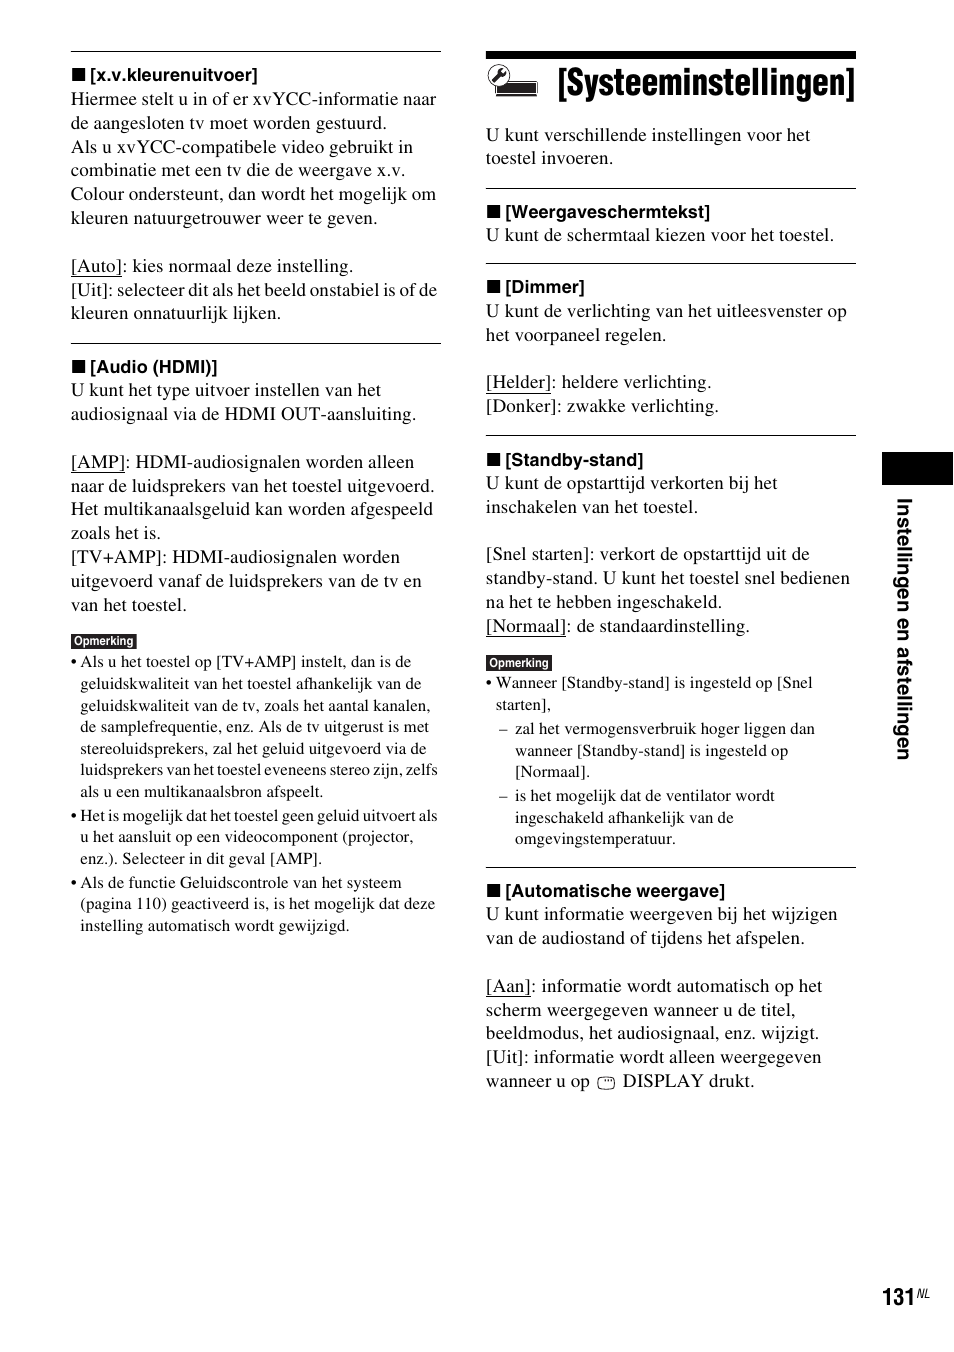 Systeeminstellingen | Sony BDV-IS1000 Manuale d'uso | Pagina 131 / 319